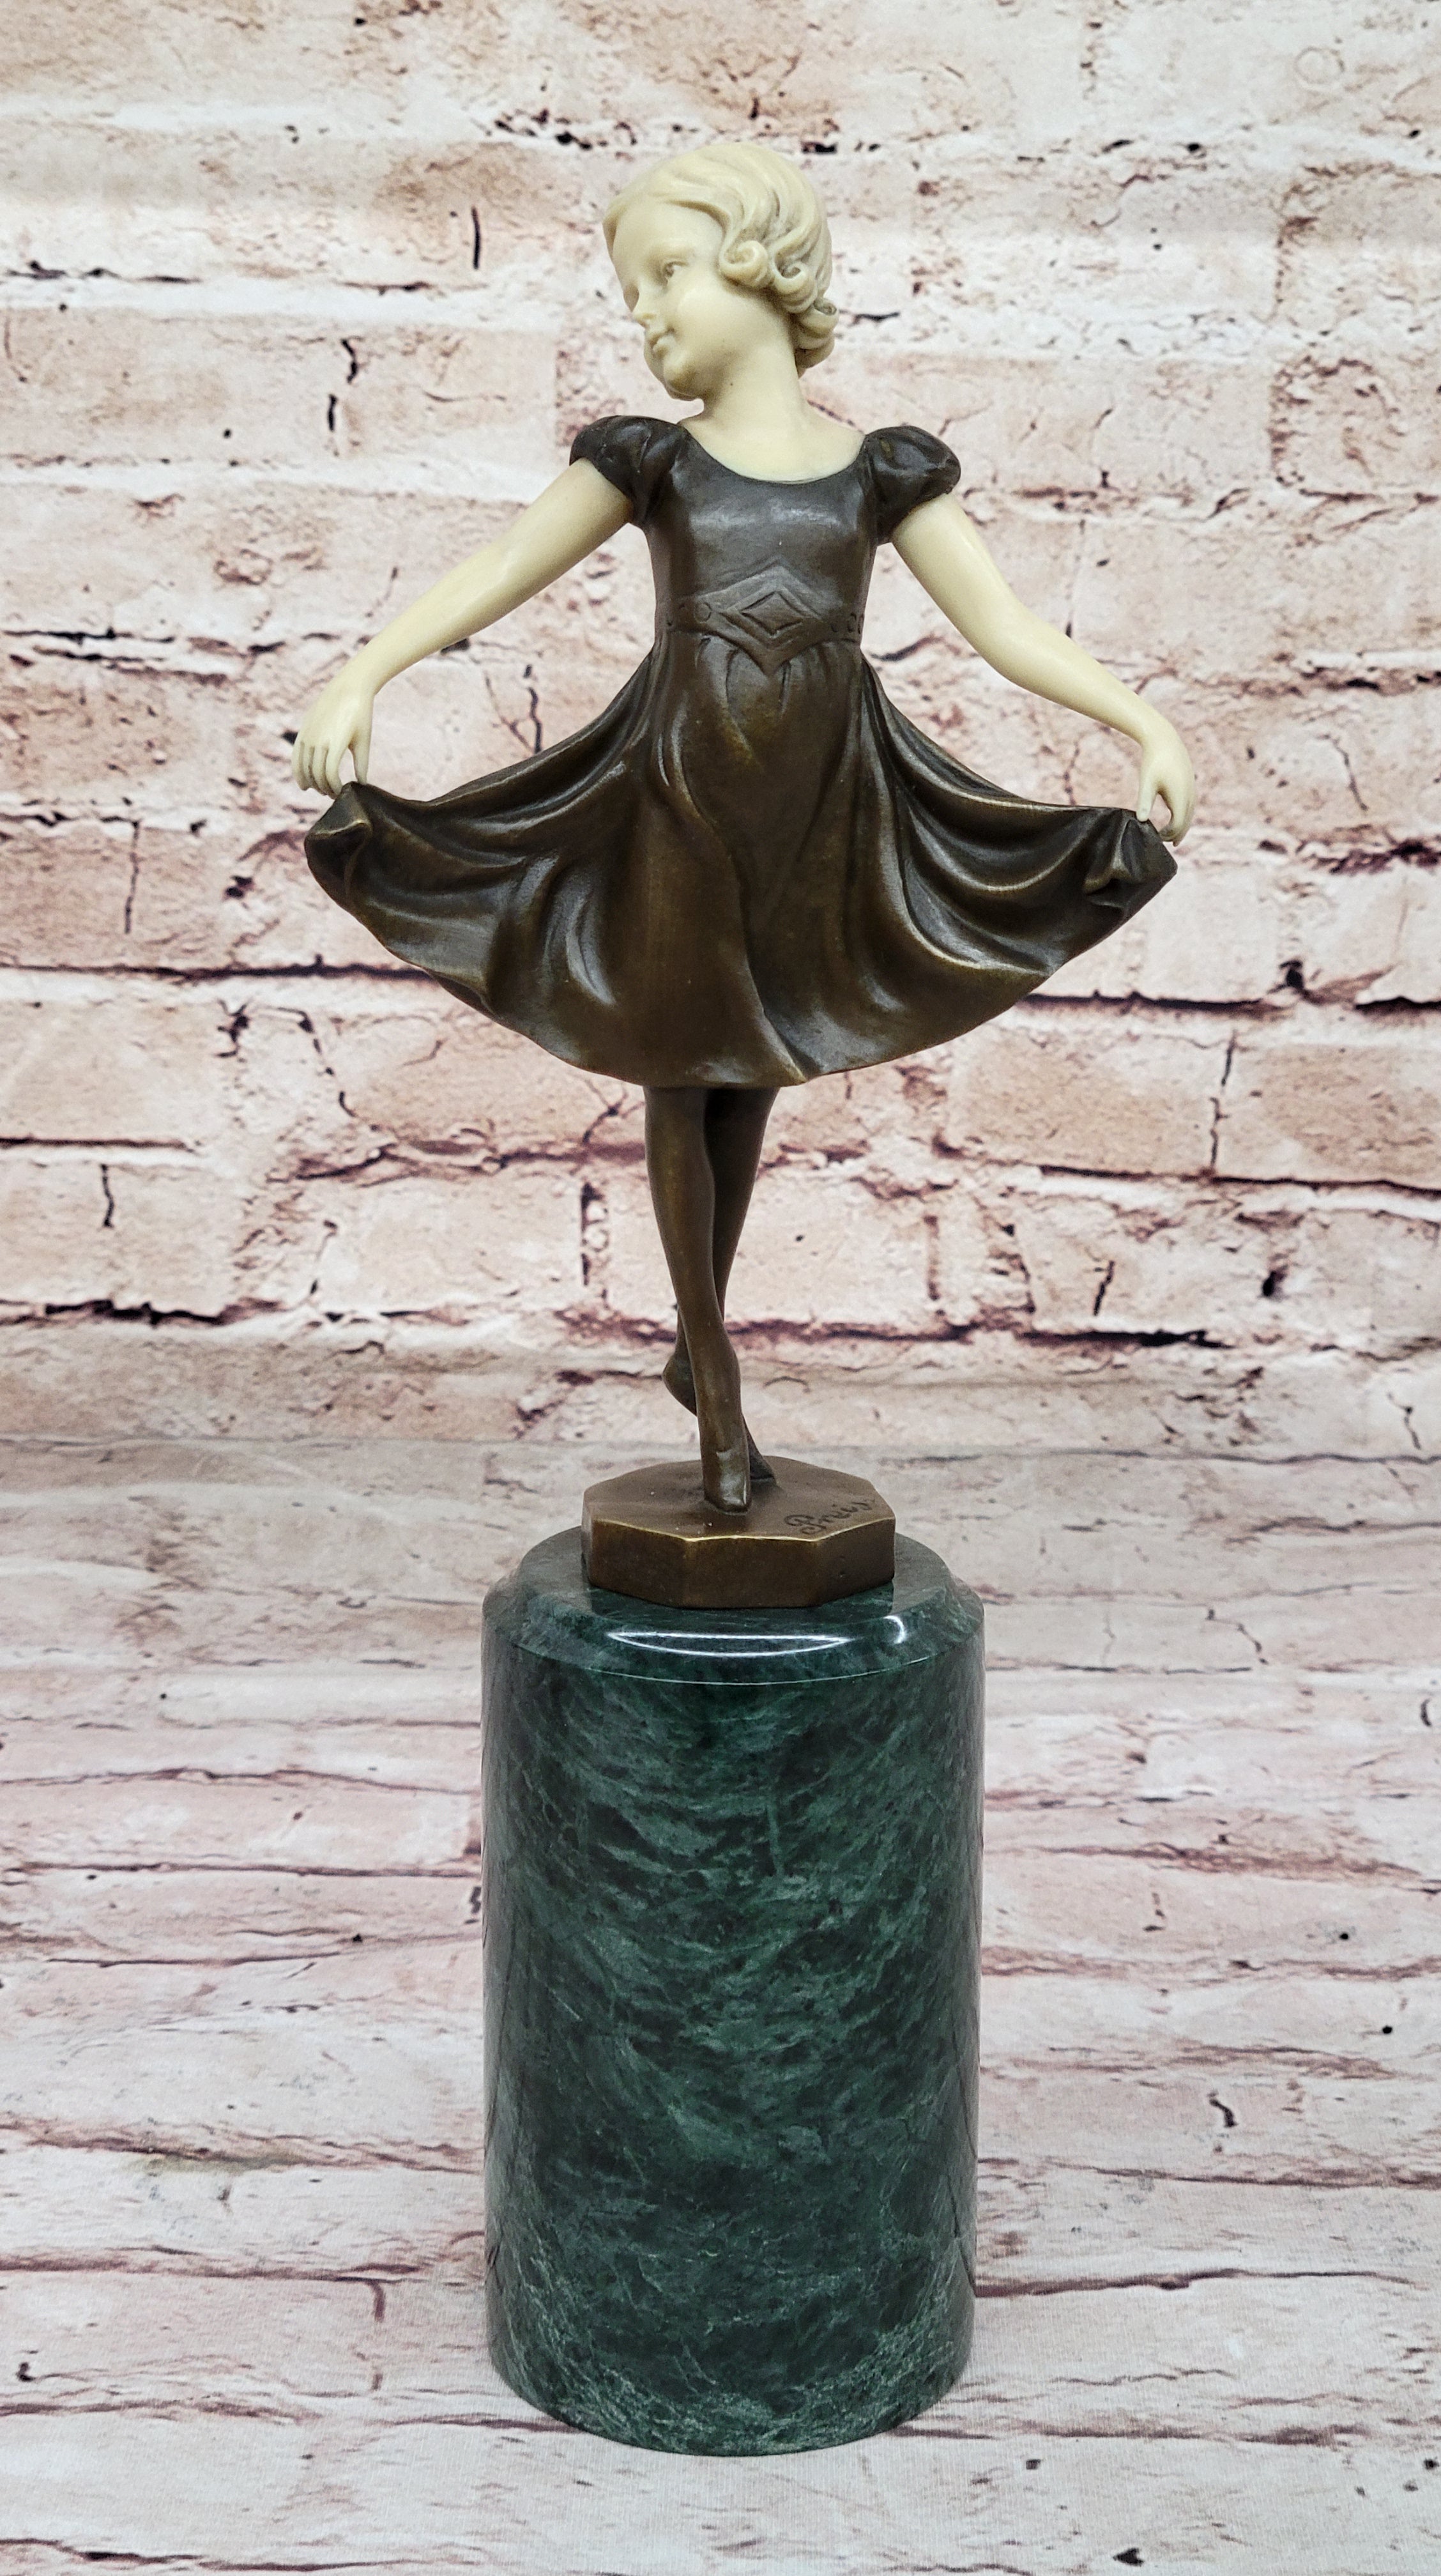 Large Prima Ballerina Bronze Sculpture Gift Nouveau Deco Figurine statue Figure